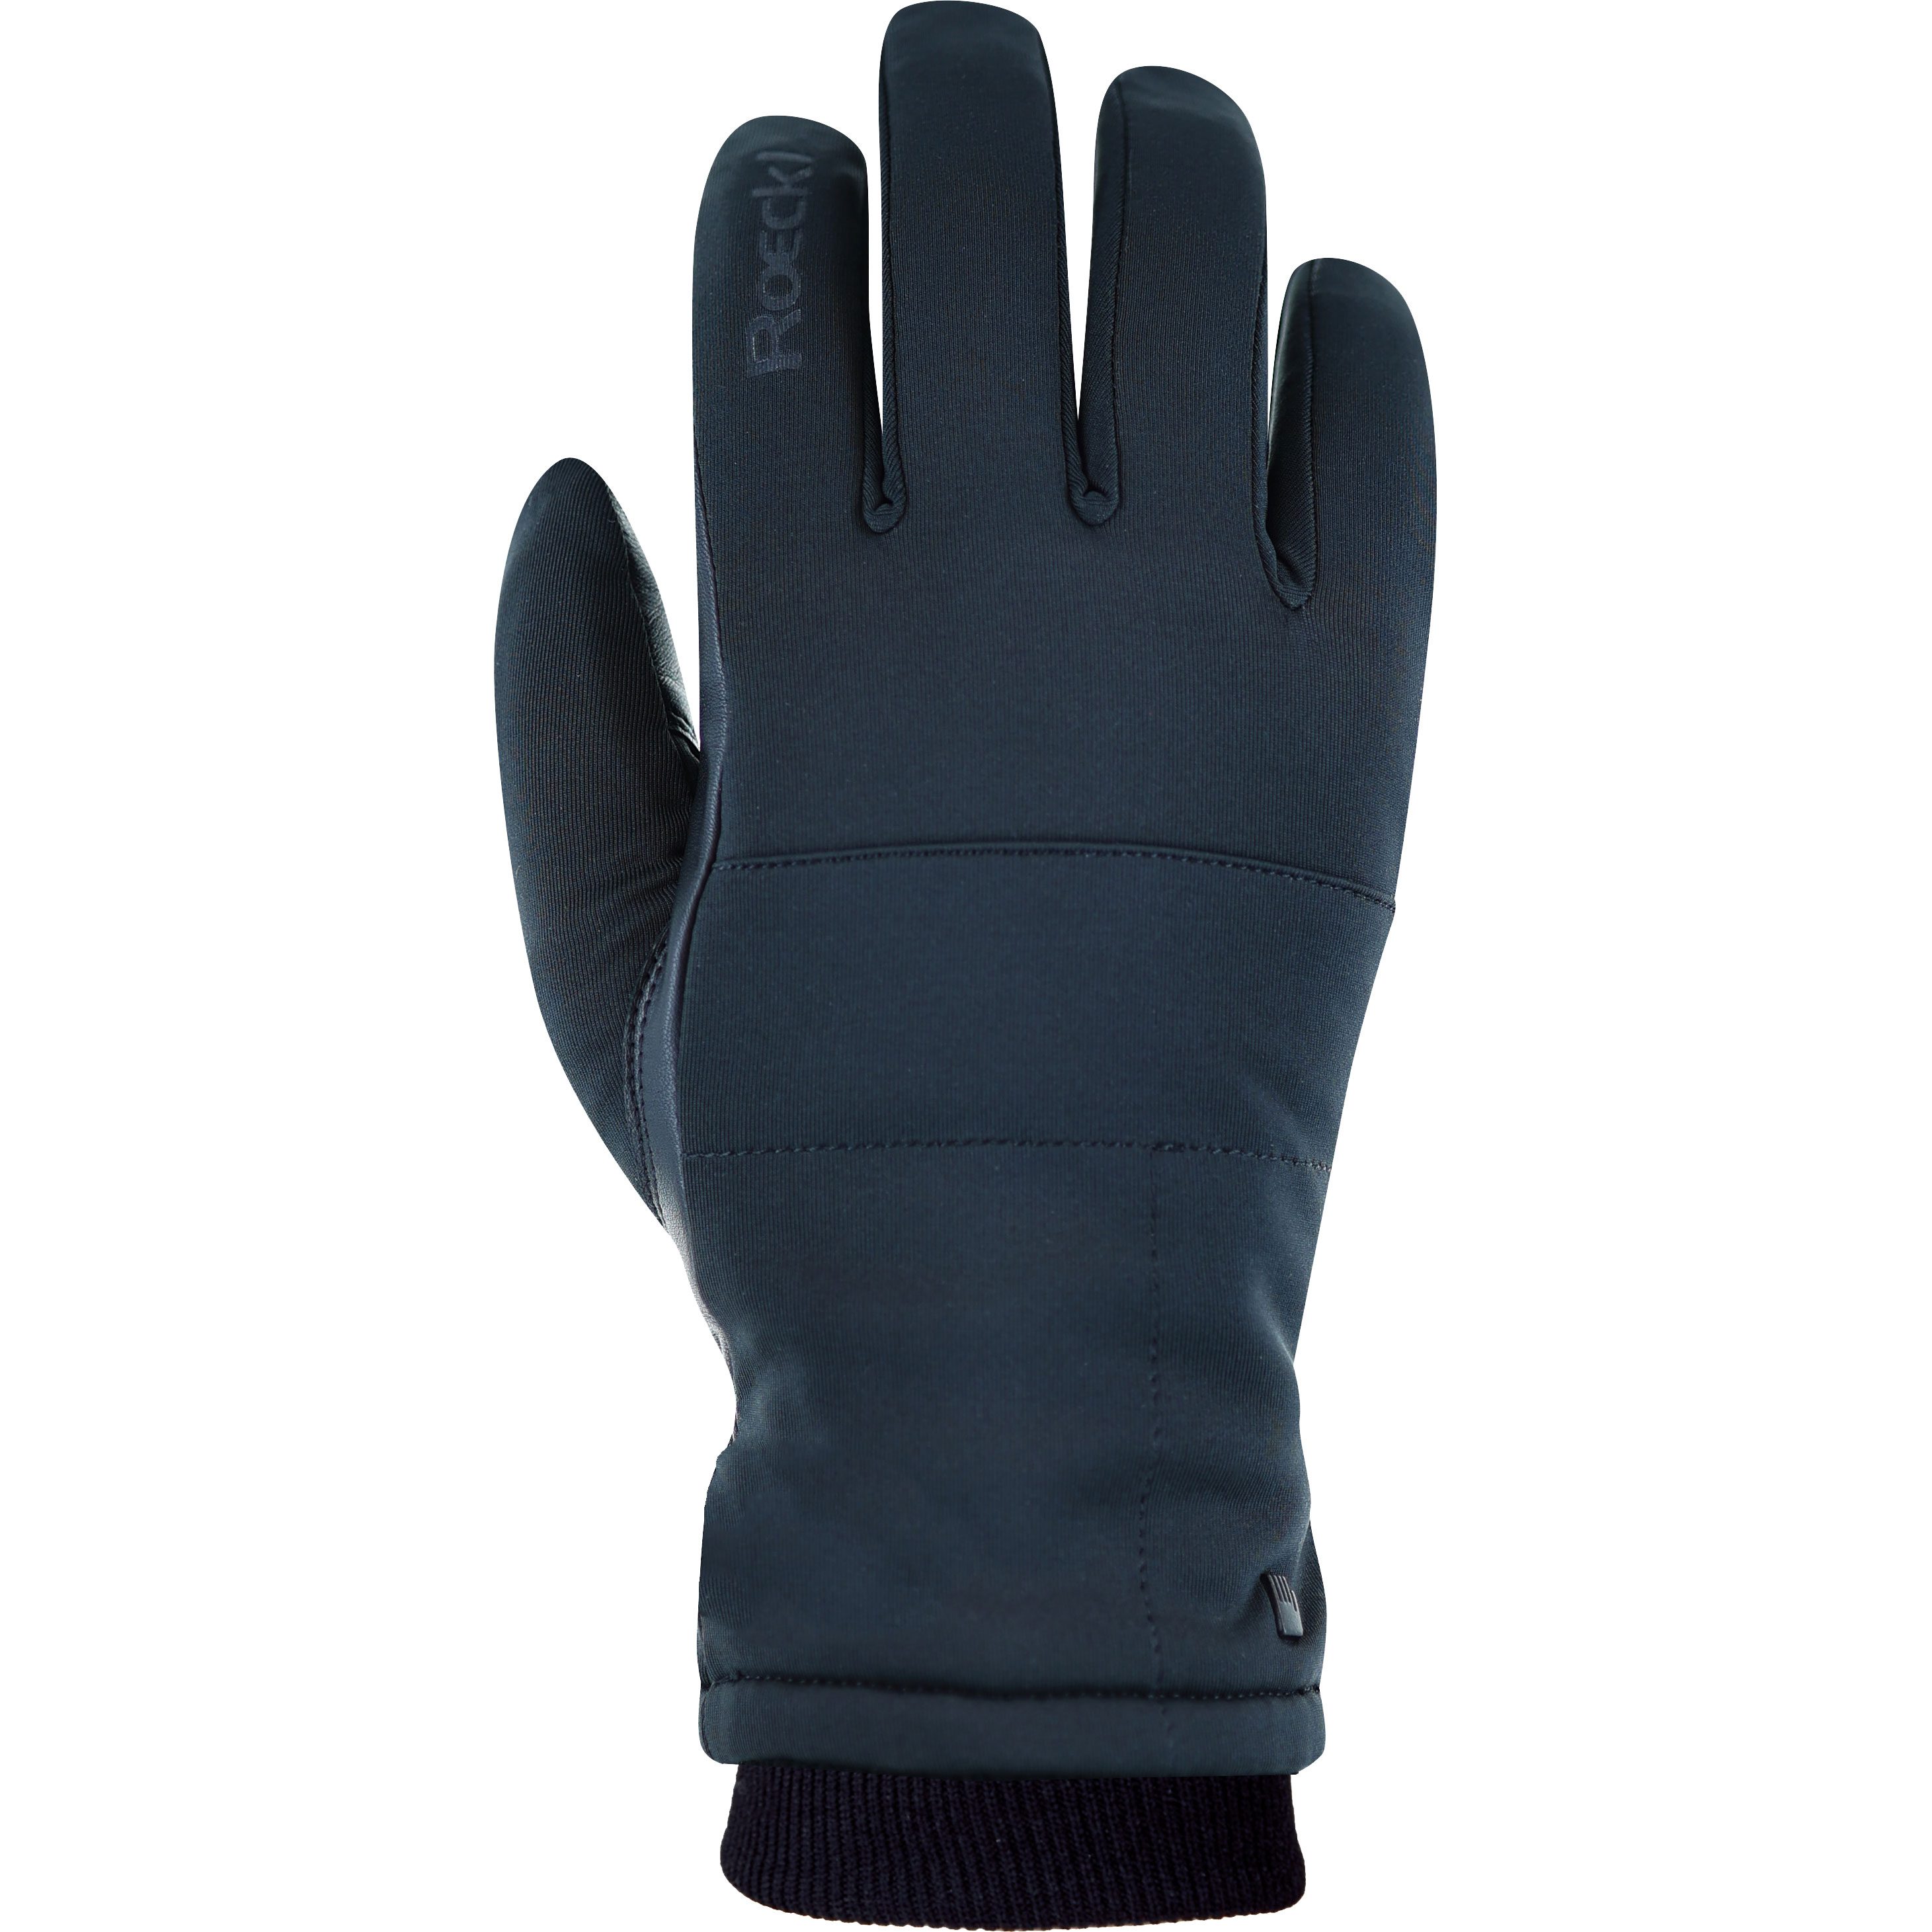 Roeckl Sports - Kolon 2 Handschuhe schwarz kaufen im Sport Bittl Shop